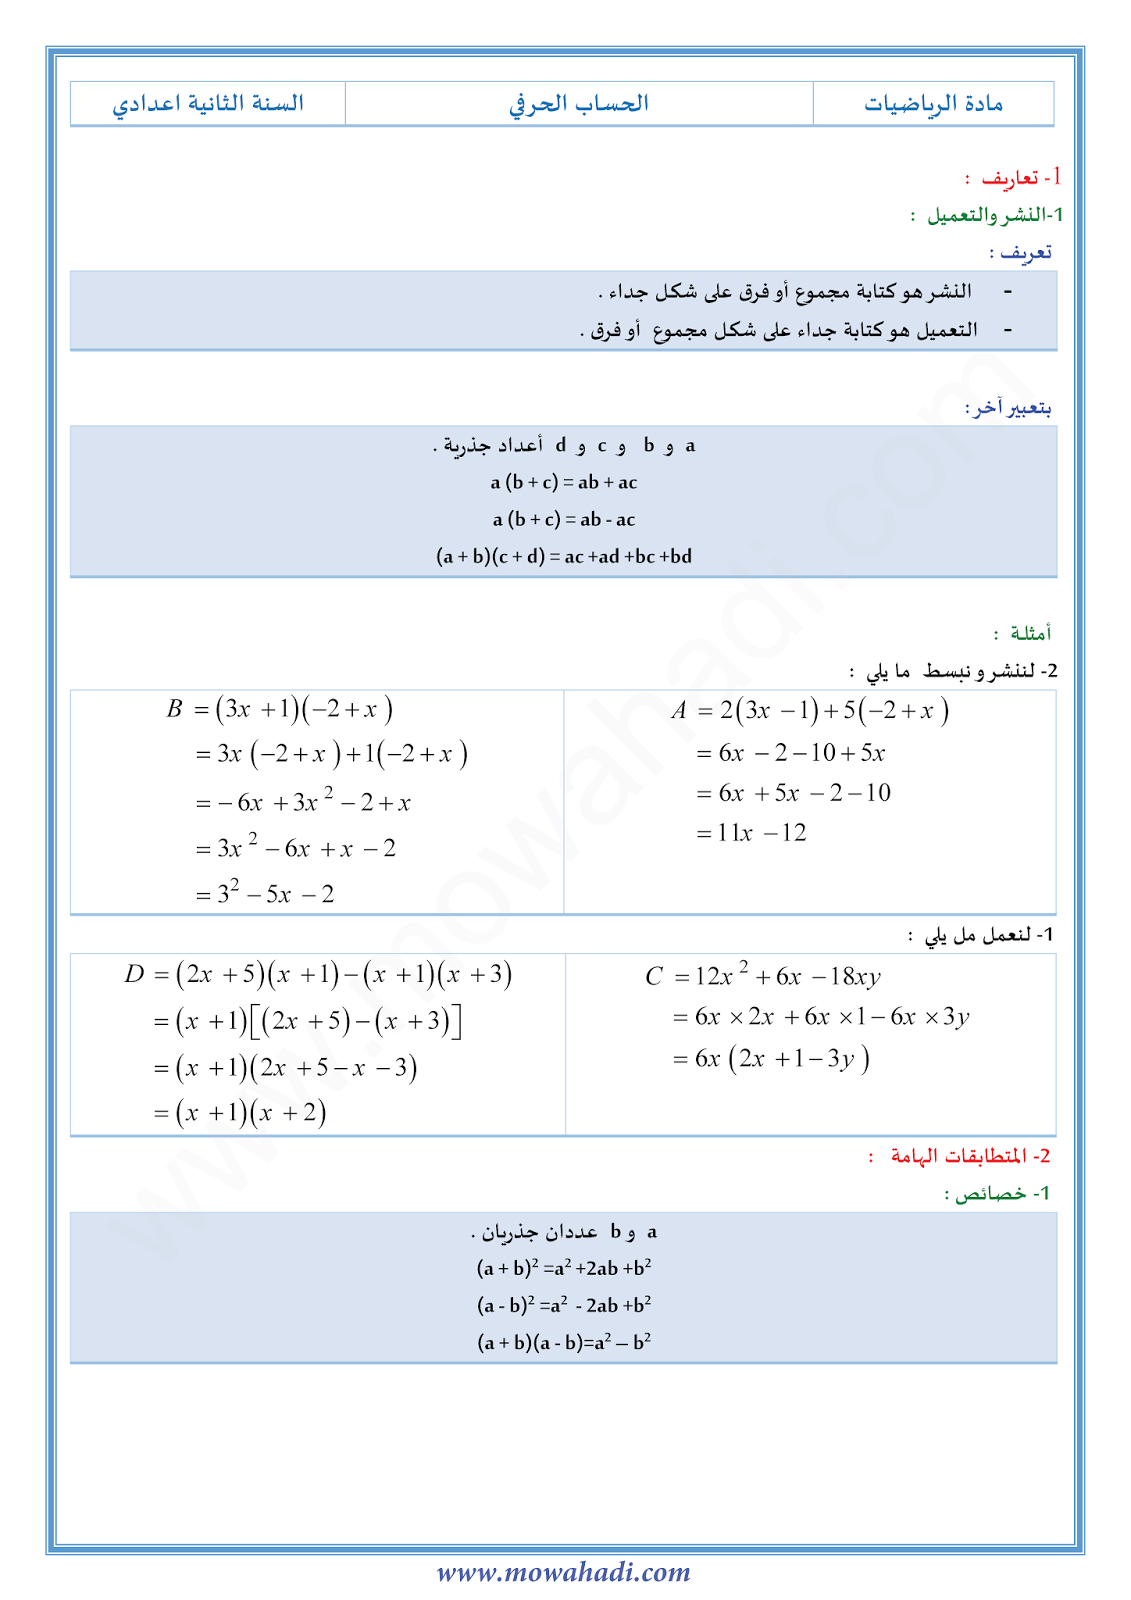 درس الحساب الحرفي للسنة الثانية اعدادي في مادة الرياضيات 11-cours-math2_001